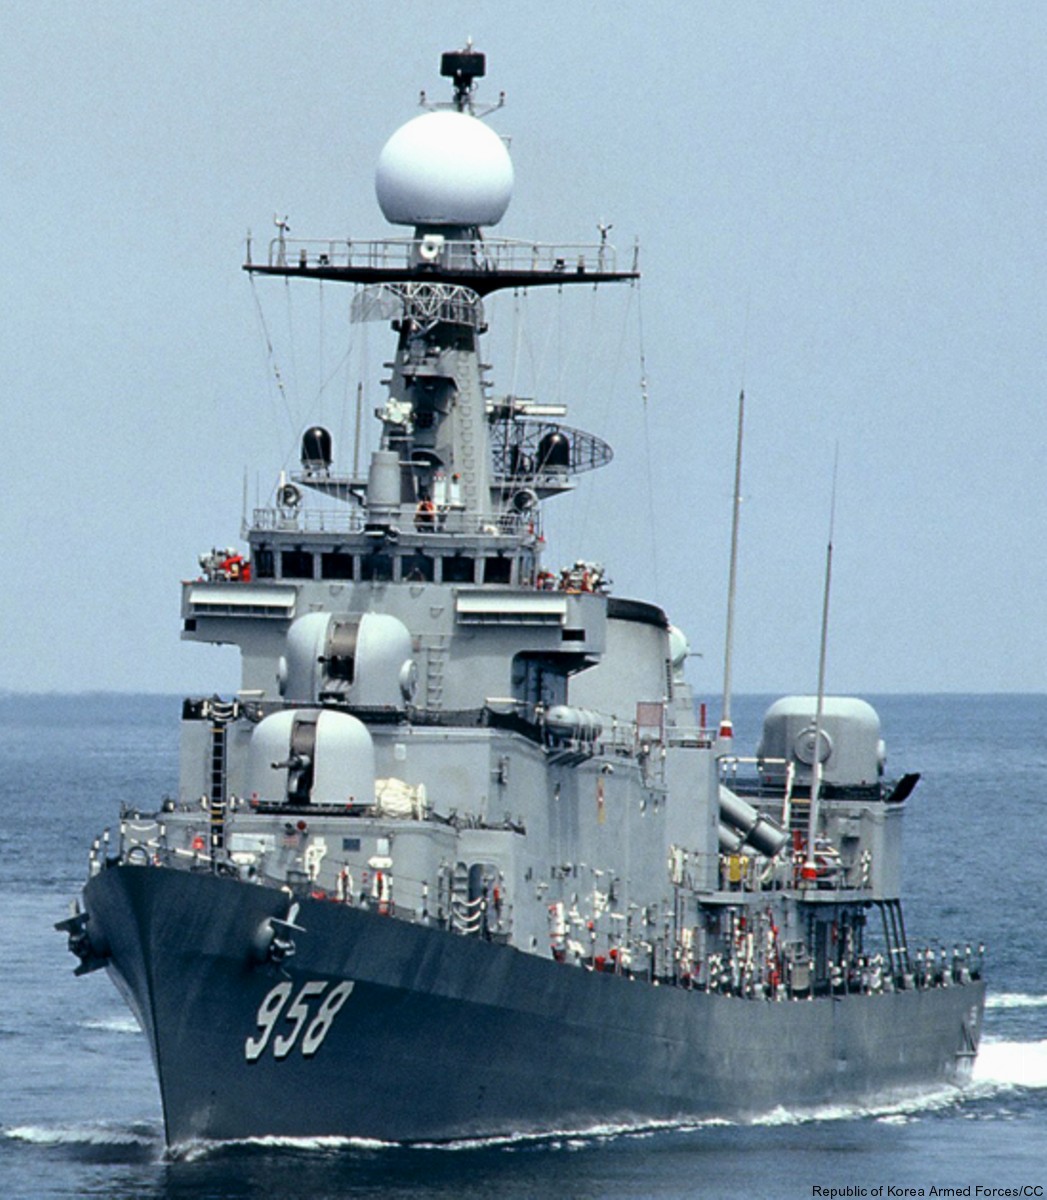 ff-958 roks jeju ulsan class frigate republic of korea navy rokn 06